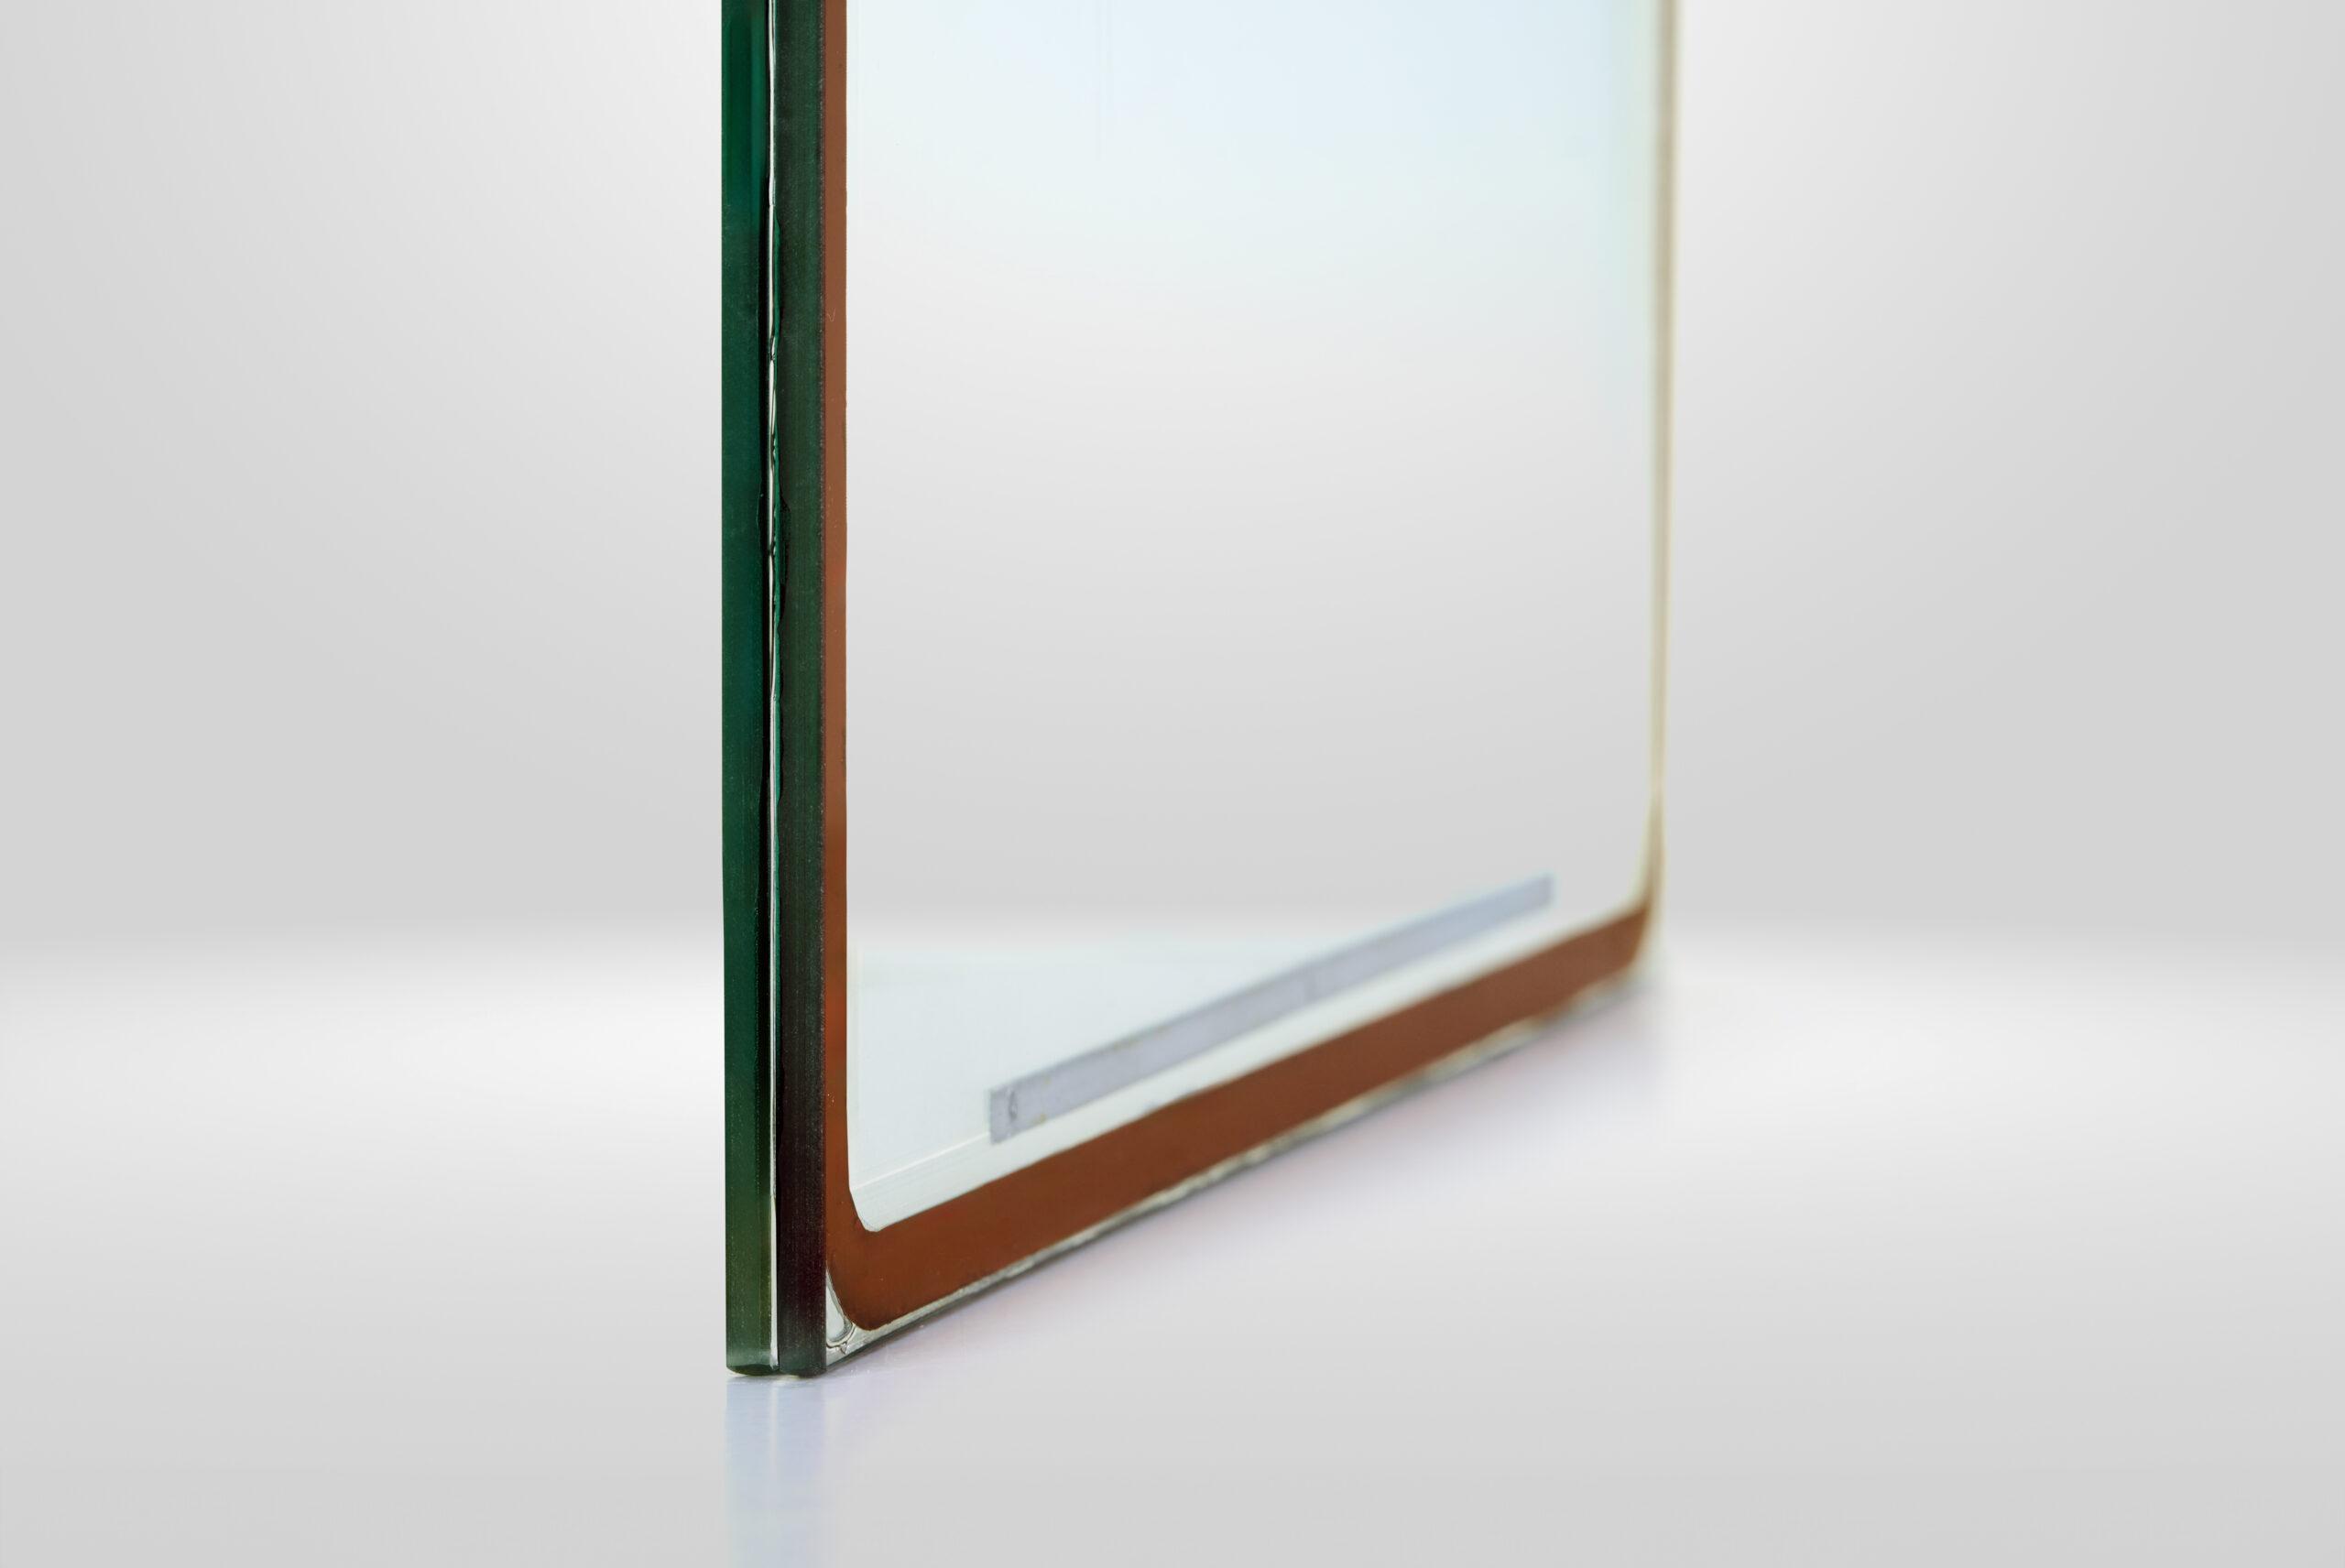 Detailfoto van BENGglas vacuümglas, je ziet het raam schuin van de zijkant.